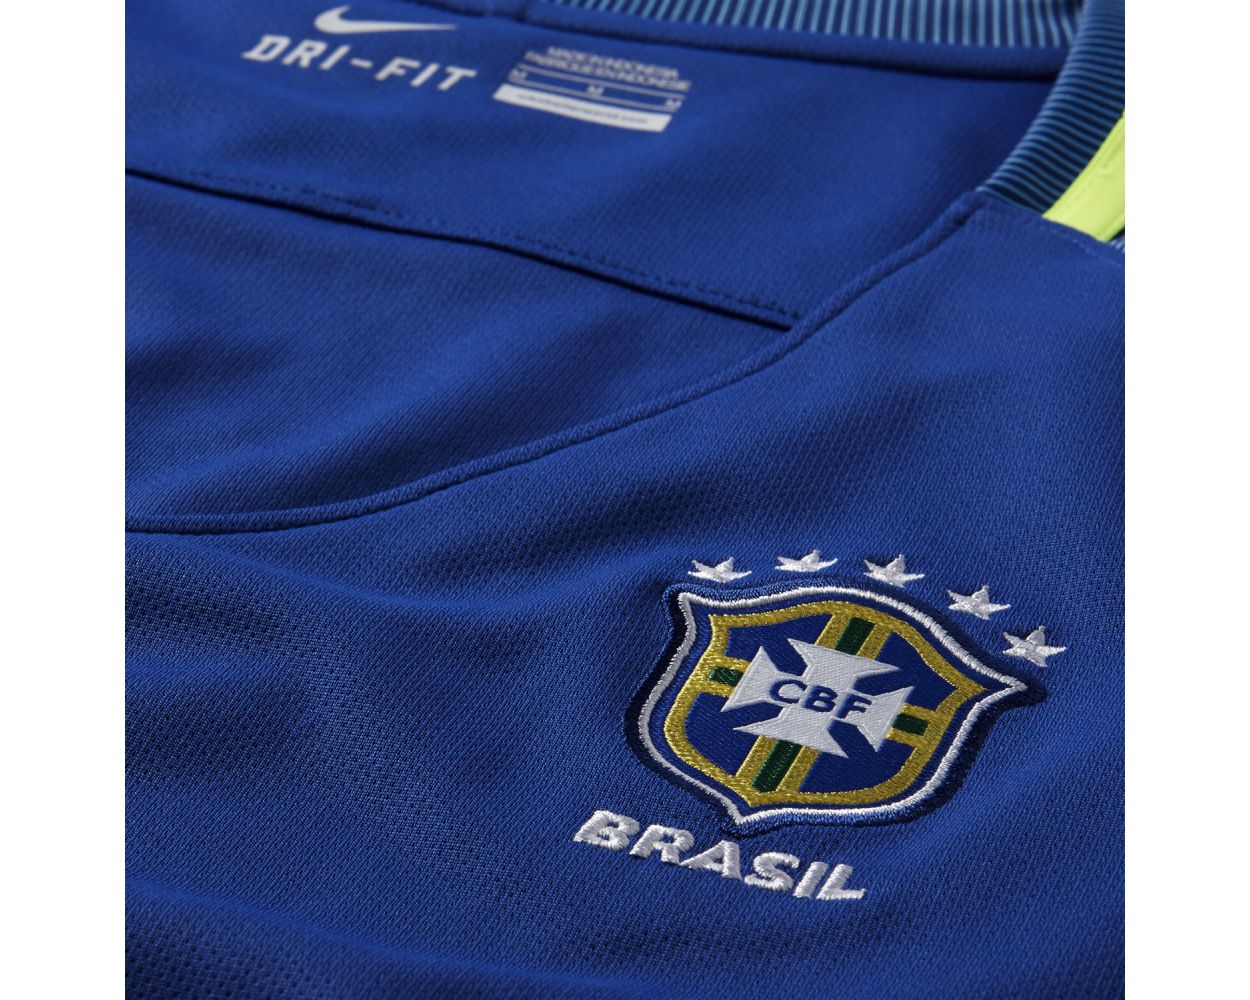 Nike Brazil Away Jersey 2016/17 - Royal